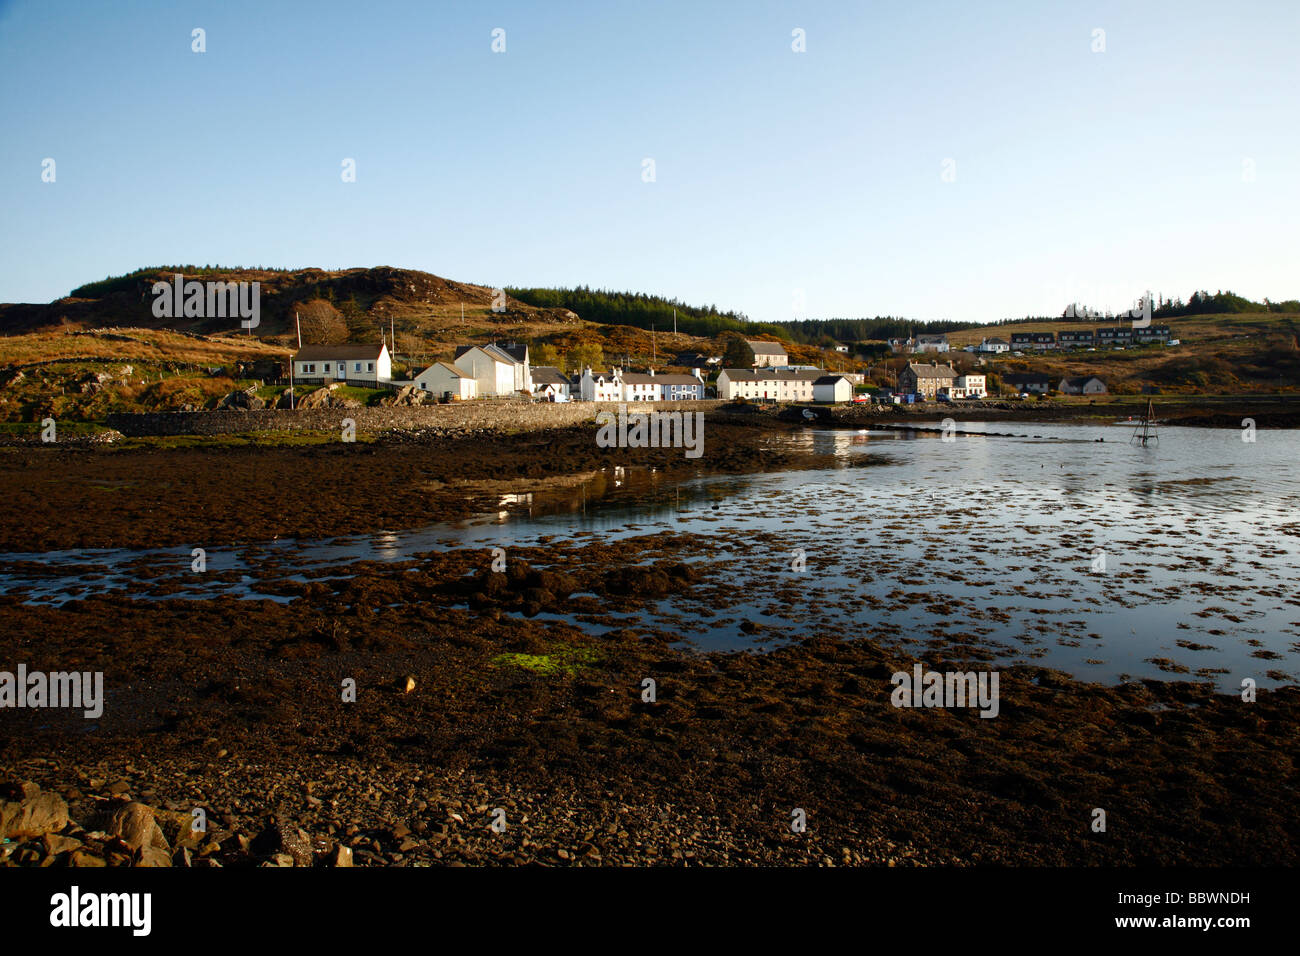 Bunessan de village sur la baie, île de Mull, Ross of Mull,Hébrides intérieures, Highlands, Ecosse, Royaume-Uni. Banque D'Images